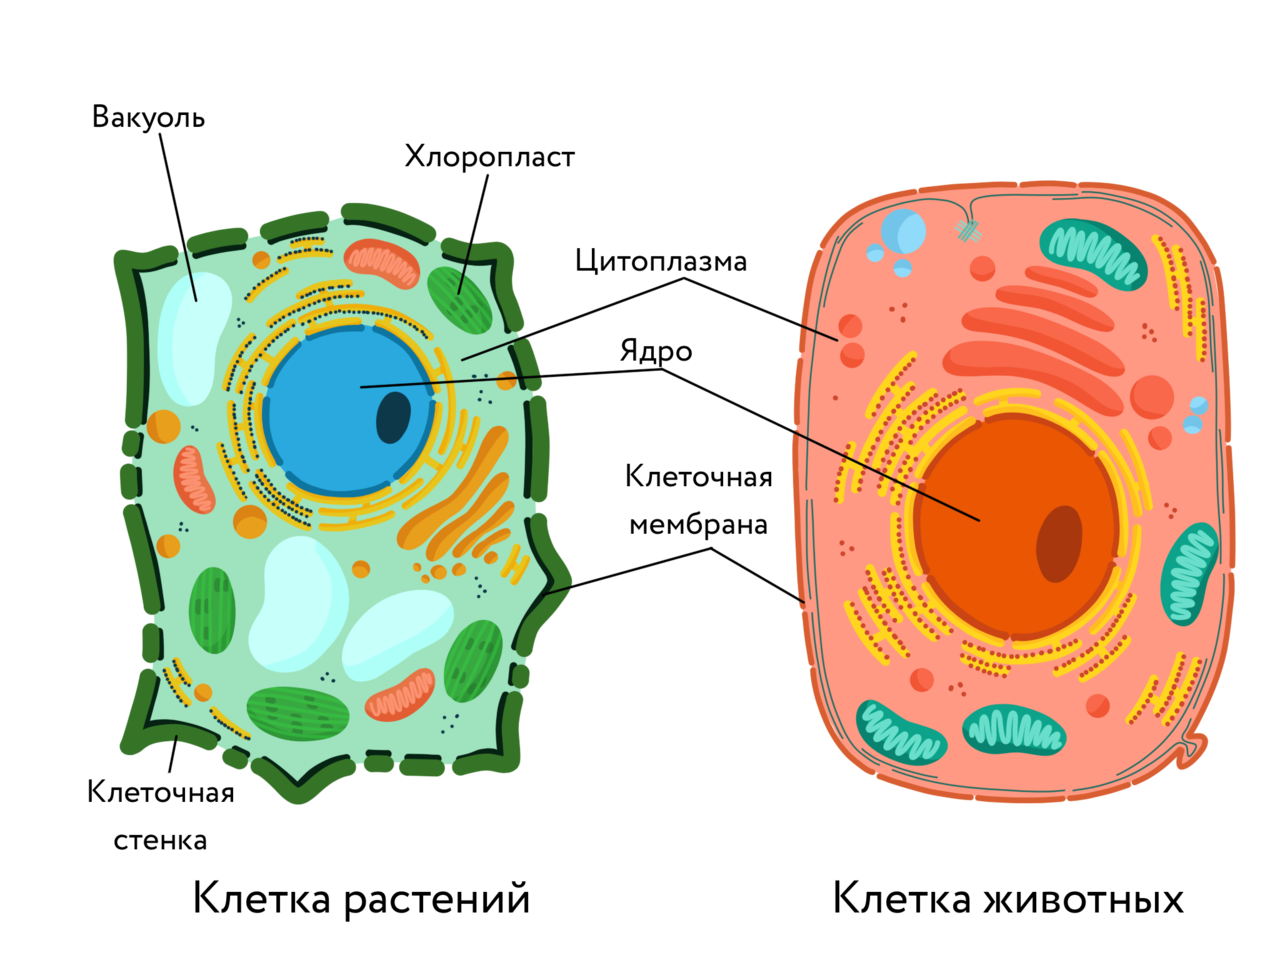 Растительная клетка - строение и функции органоидов, сравнительная характеристика с животной клеткой